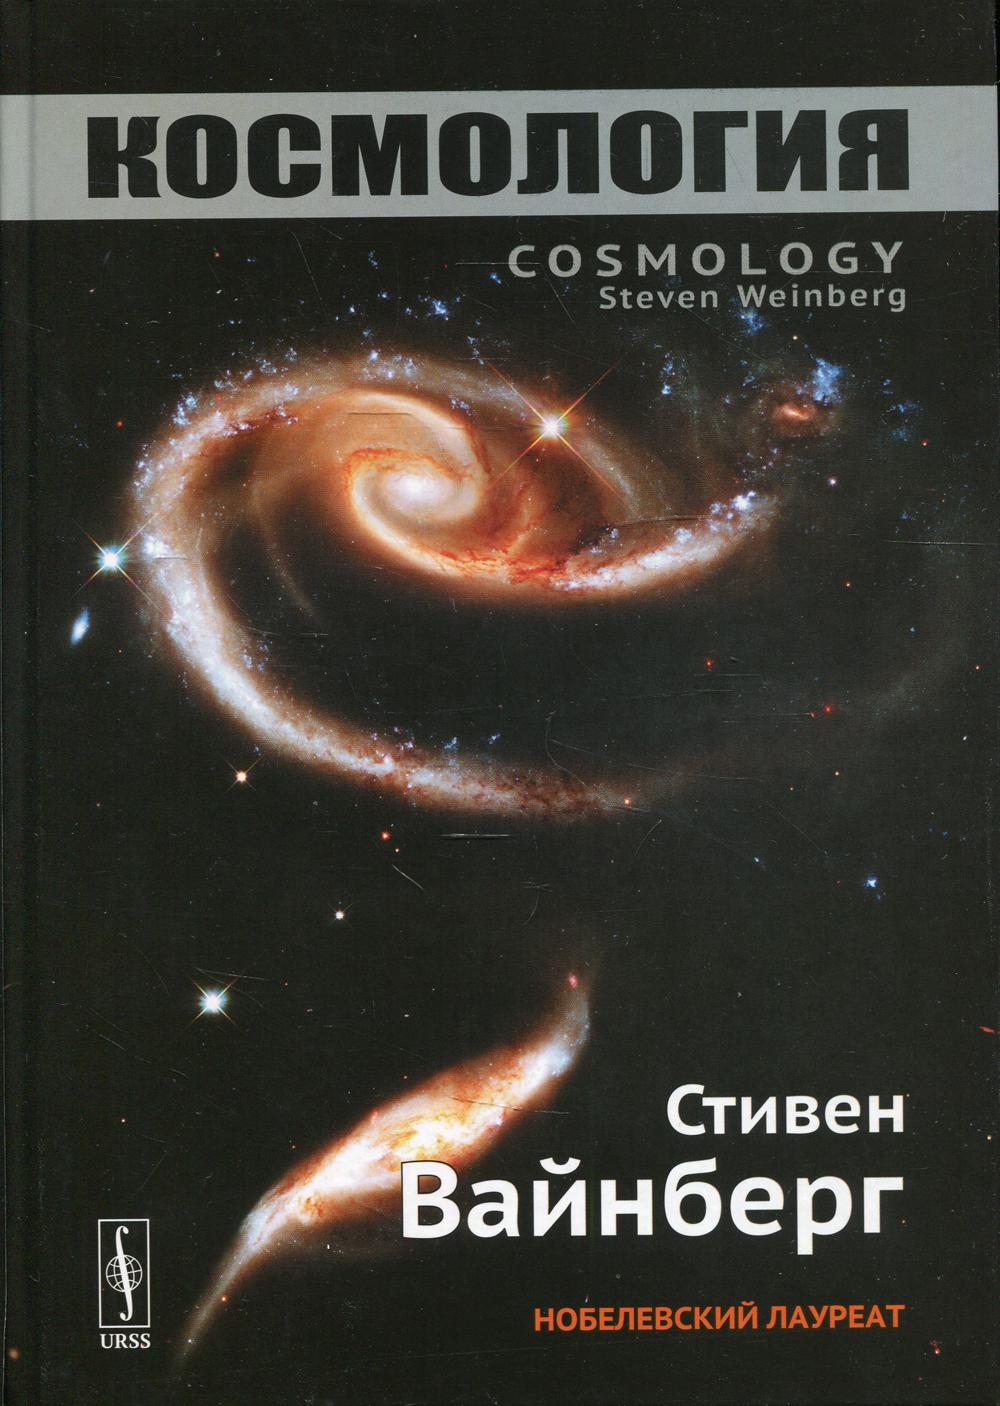 фото Книга космология 2-е изд. ленанд